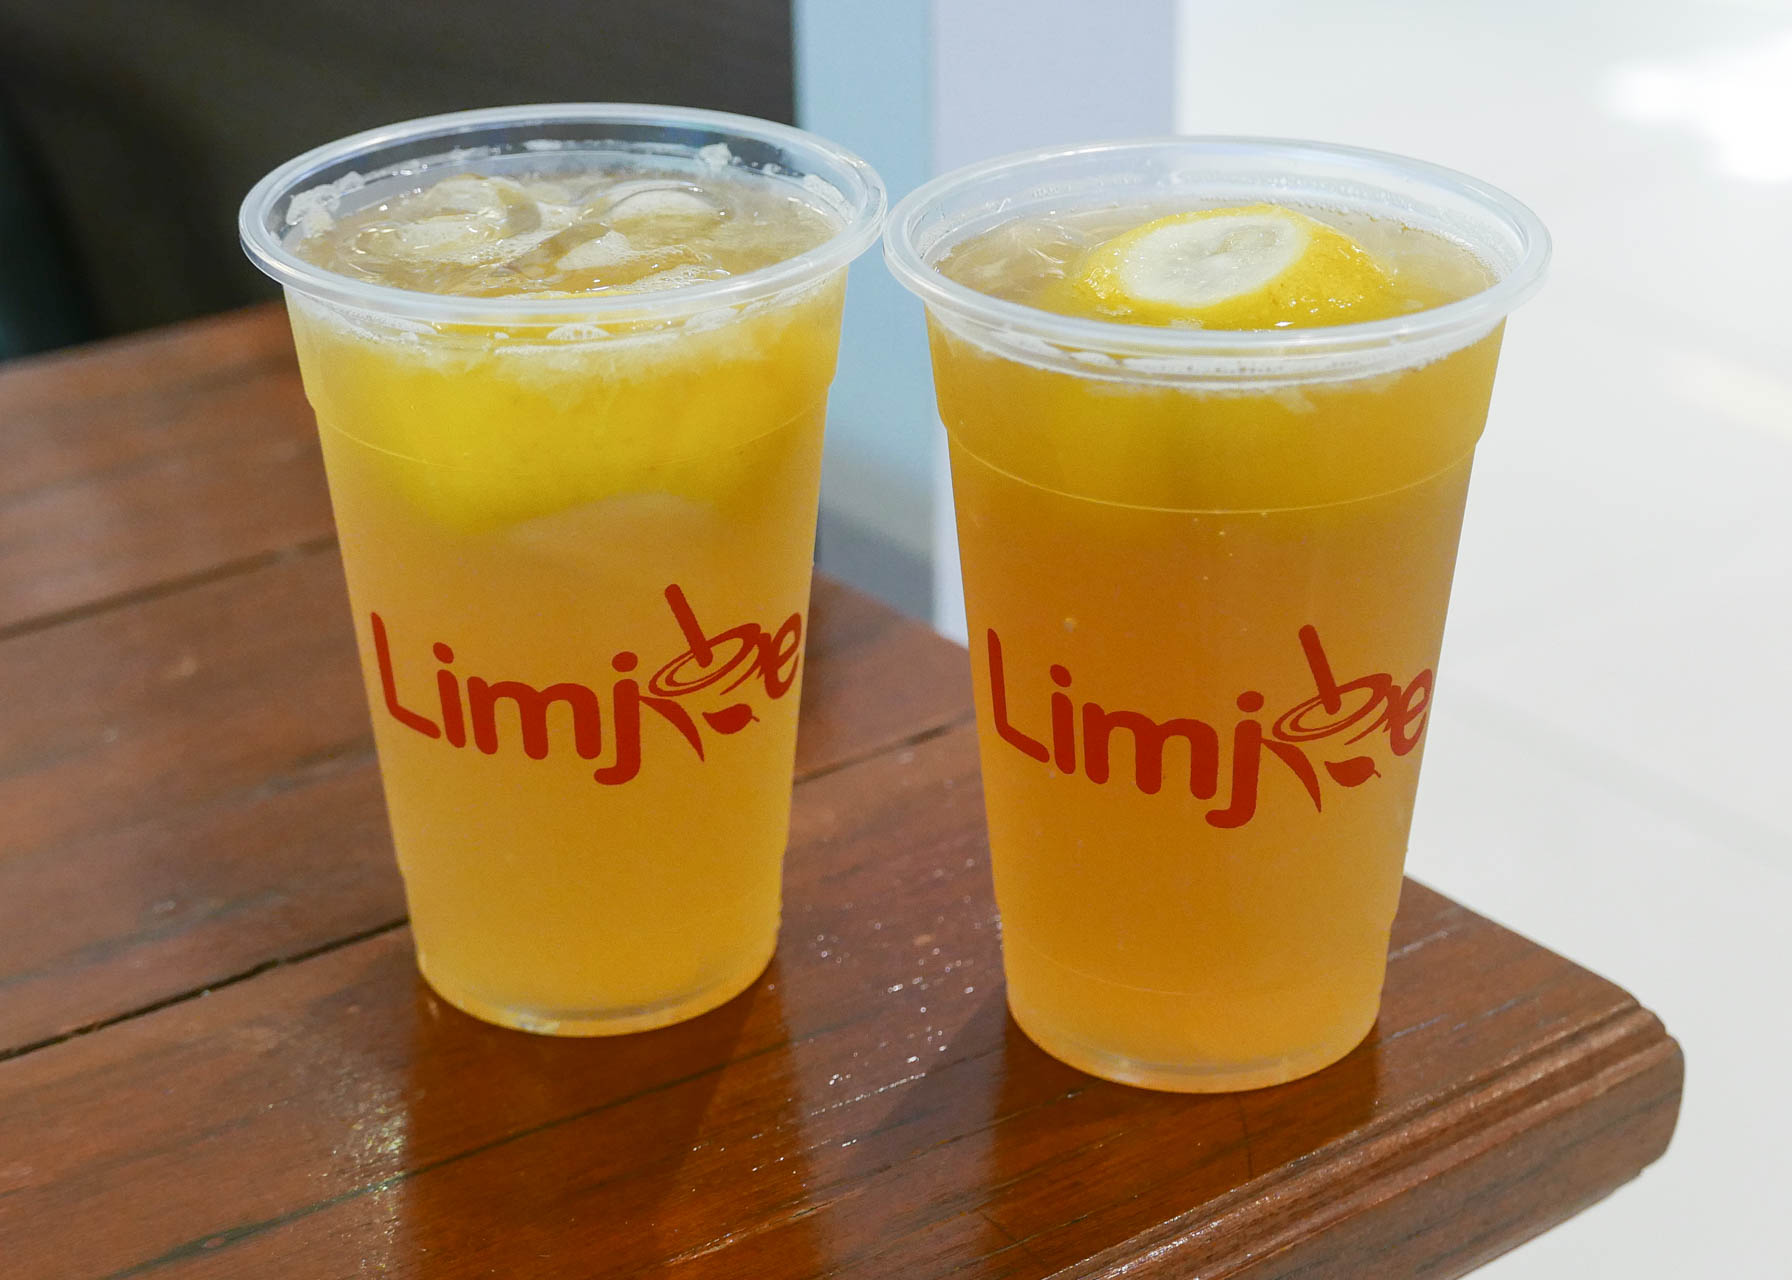 Lemonade from Limjoe